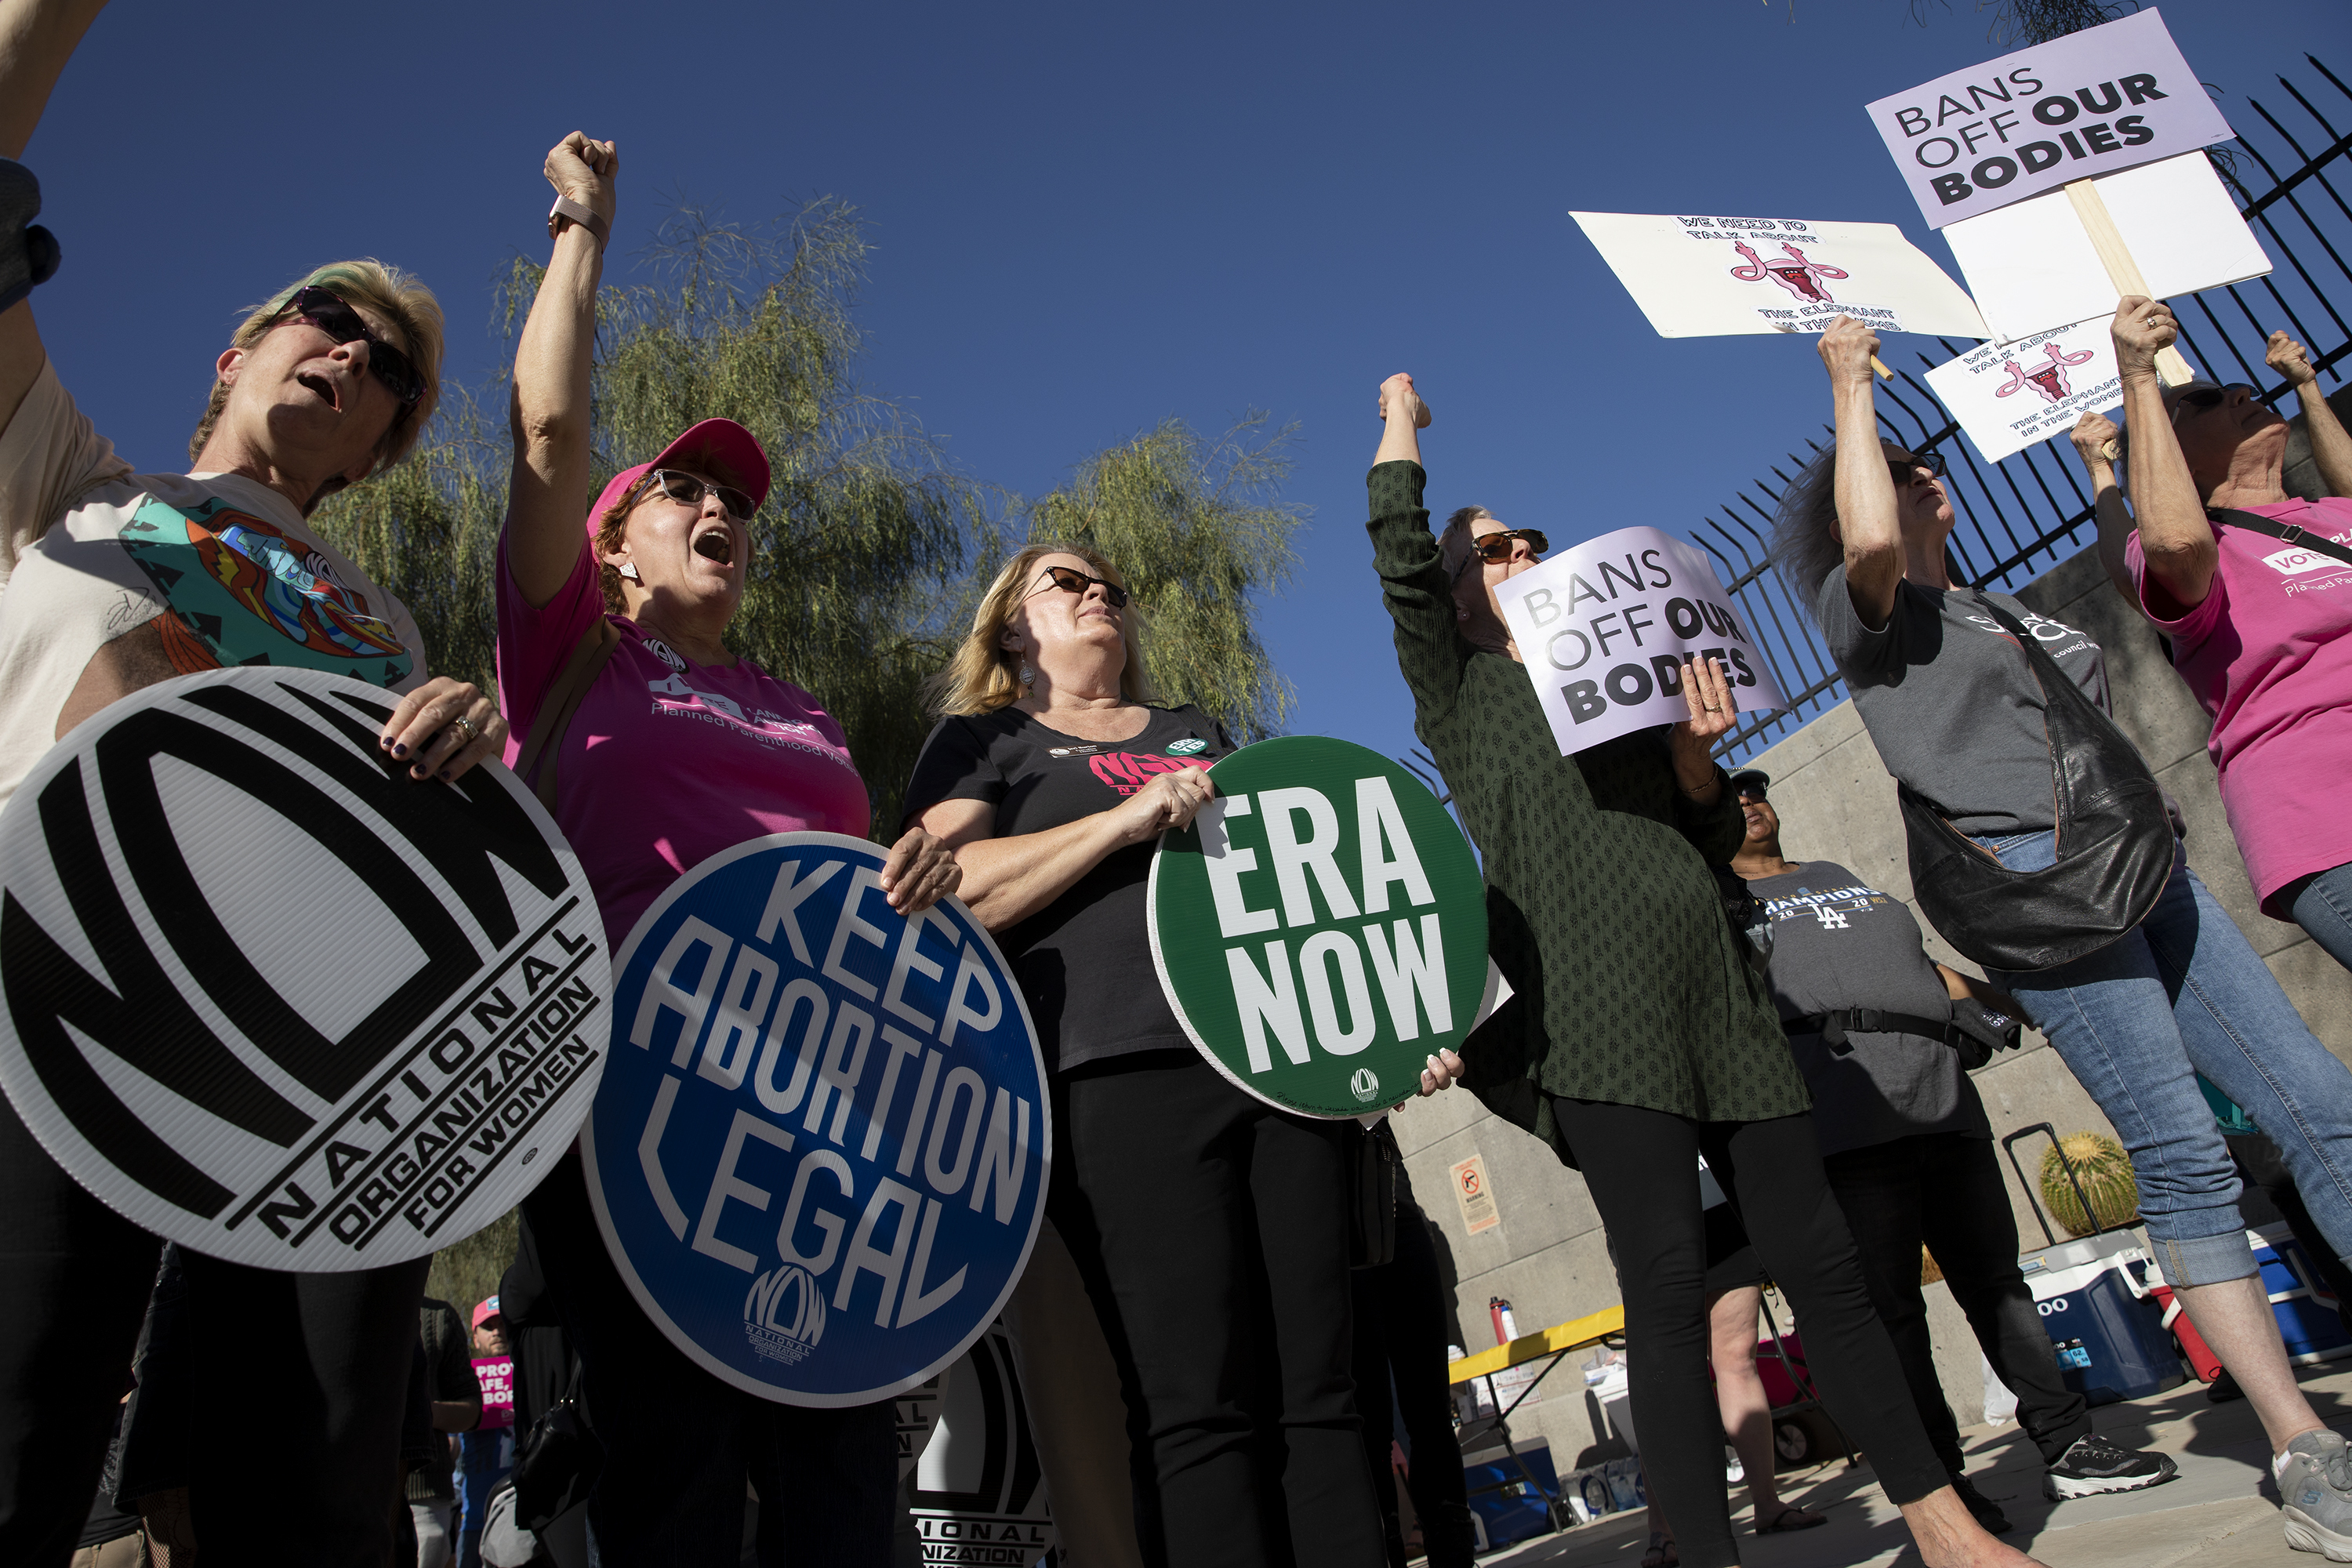 Undang-undang aborsi Nevada: Pembatasan masih dimungkinkan di Negara Bagian Perak yang pro-pilihan